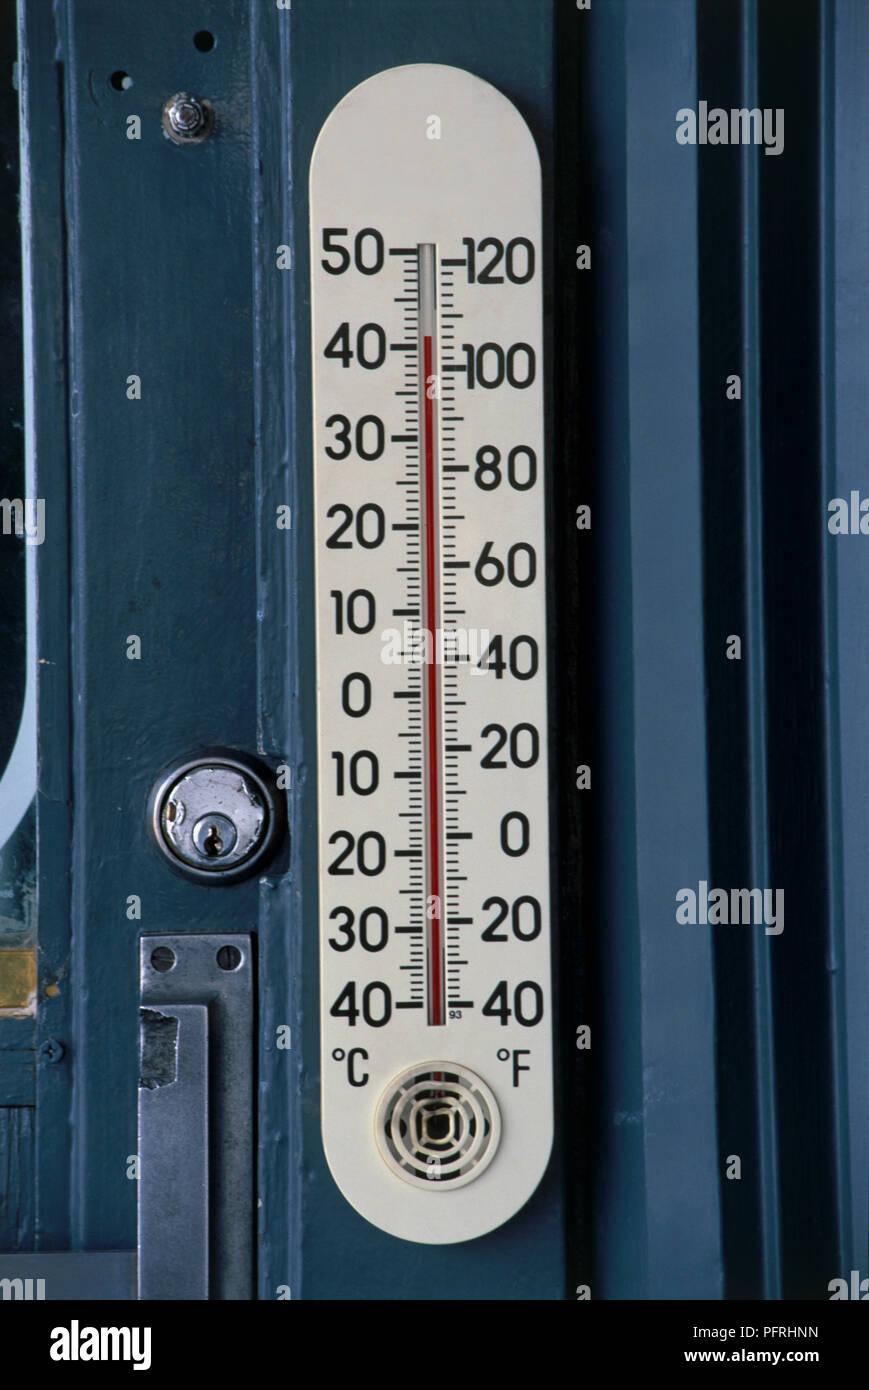 USA, Nevada, Las Vegas, temperature gauge with Celsius and Fahrenheit